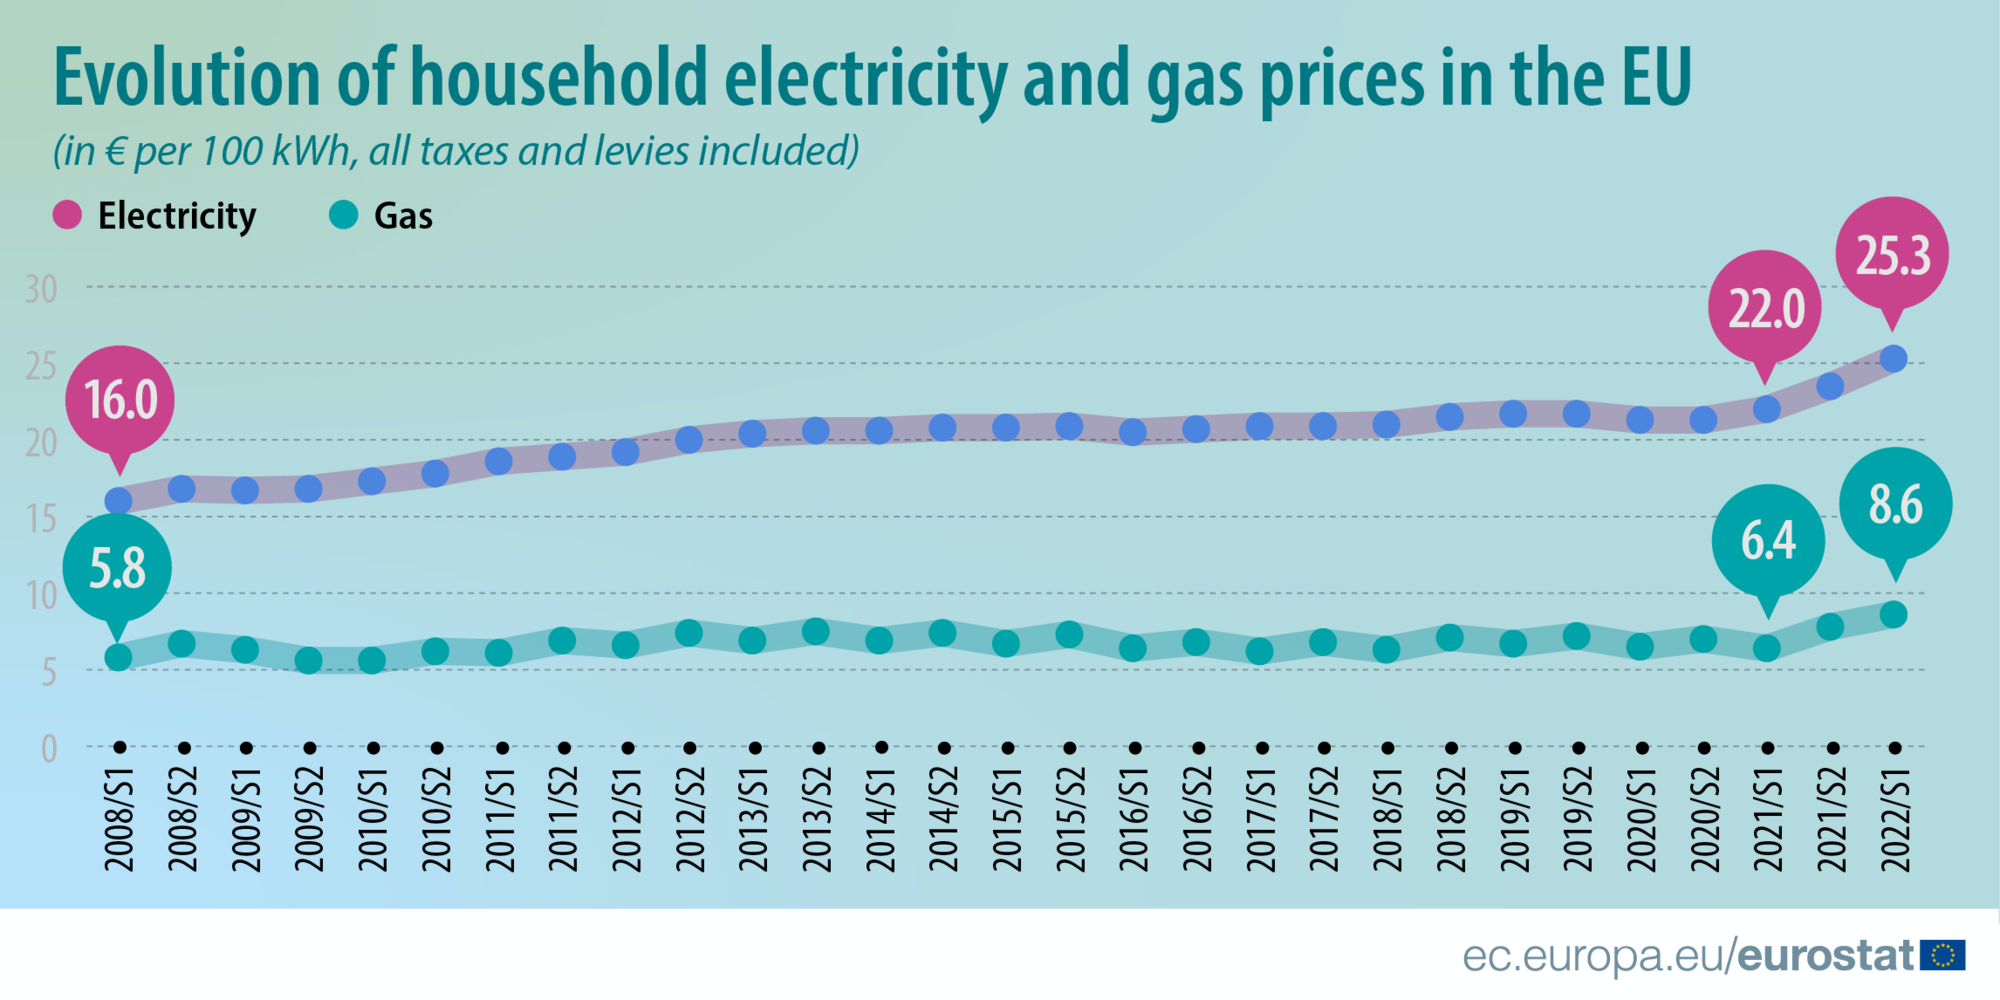 Evolution des prix du gaz et de l'électricité dans l'Union européenne (UE) en euros et pour 100 kWh, du premier semestre 2008 au premier semestre 2022. En rose la courbe de l'électricité, en vert celle du gaz.